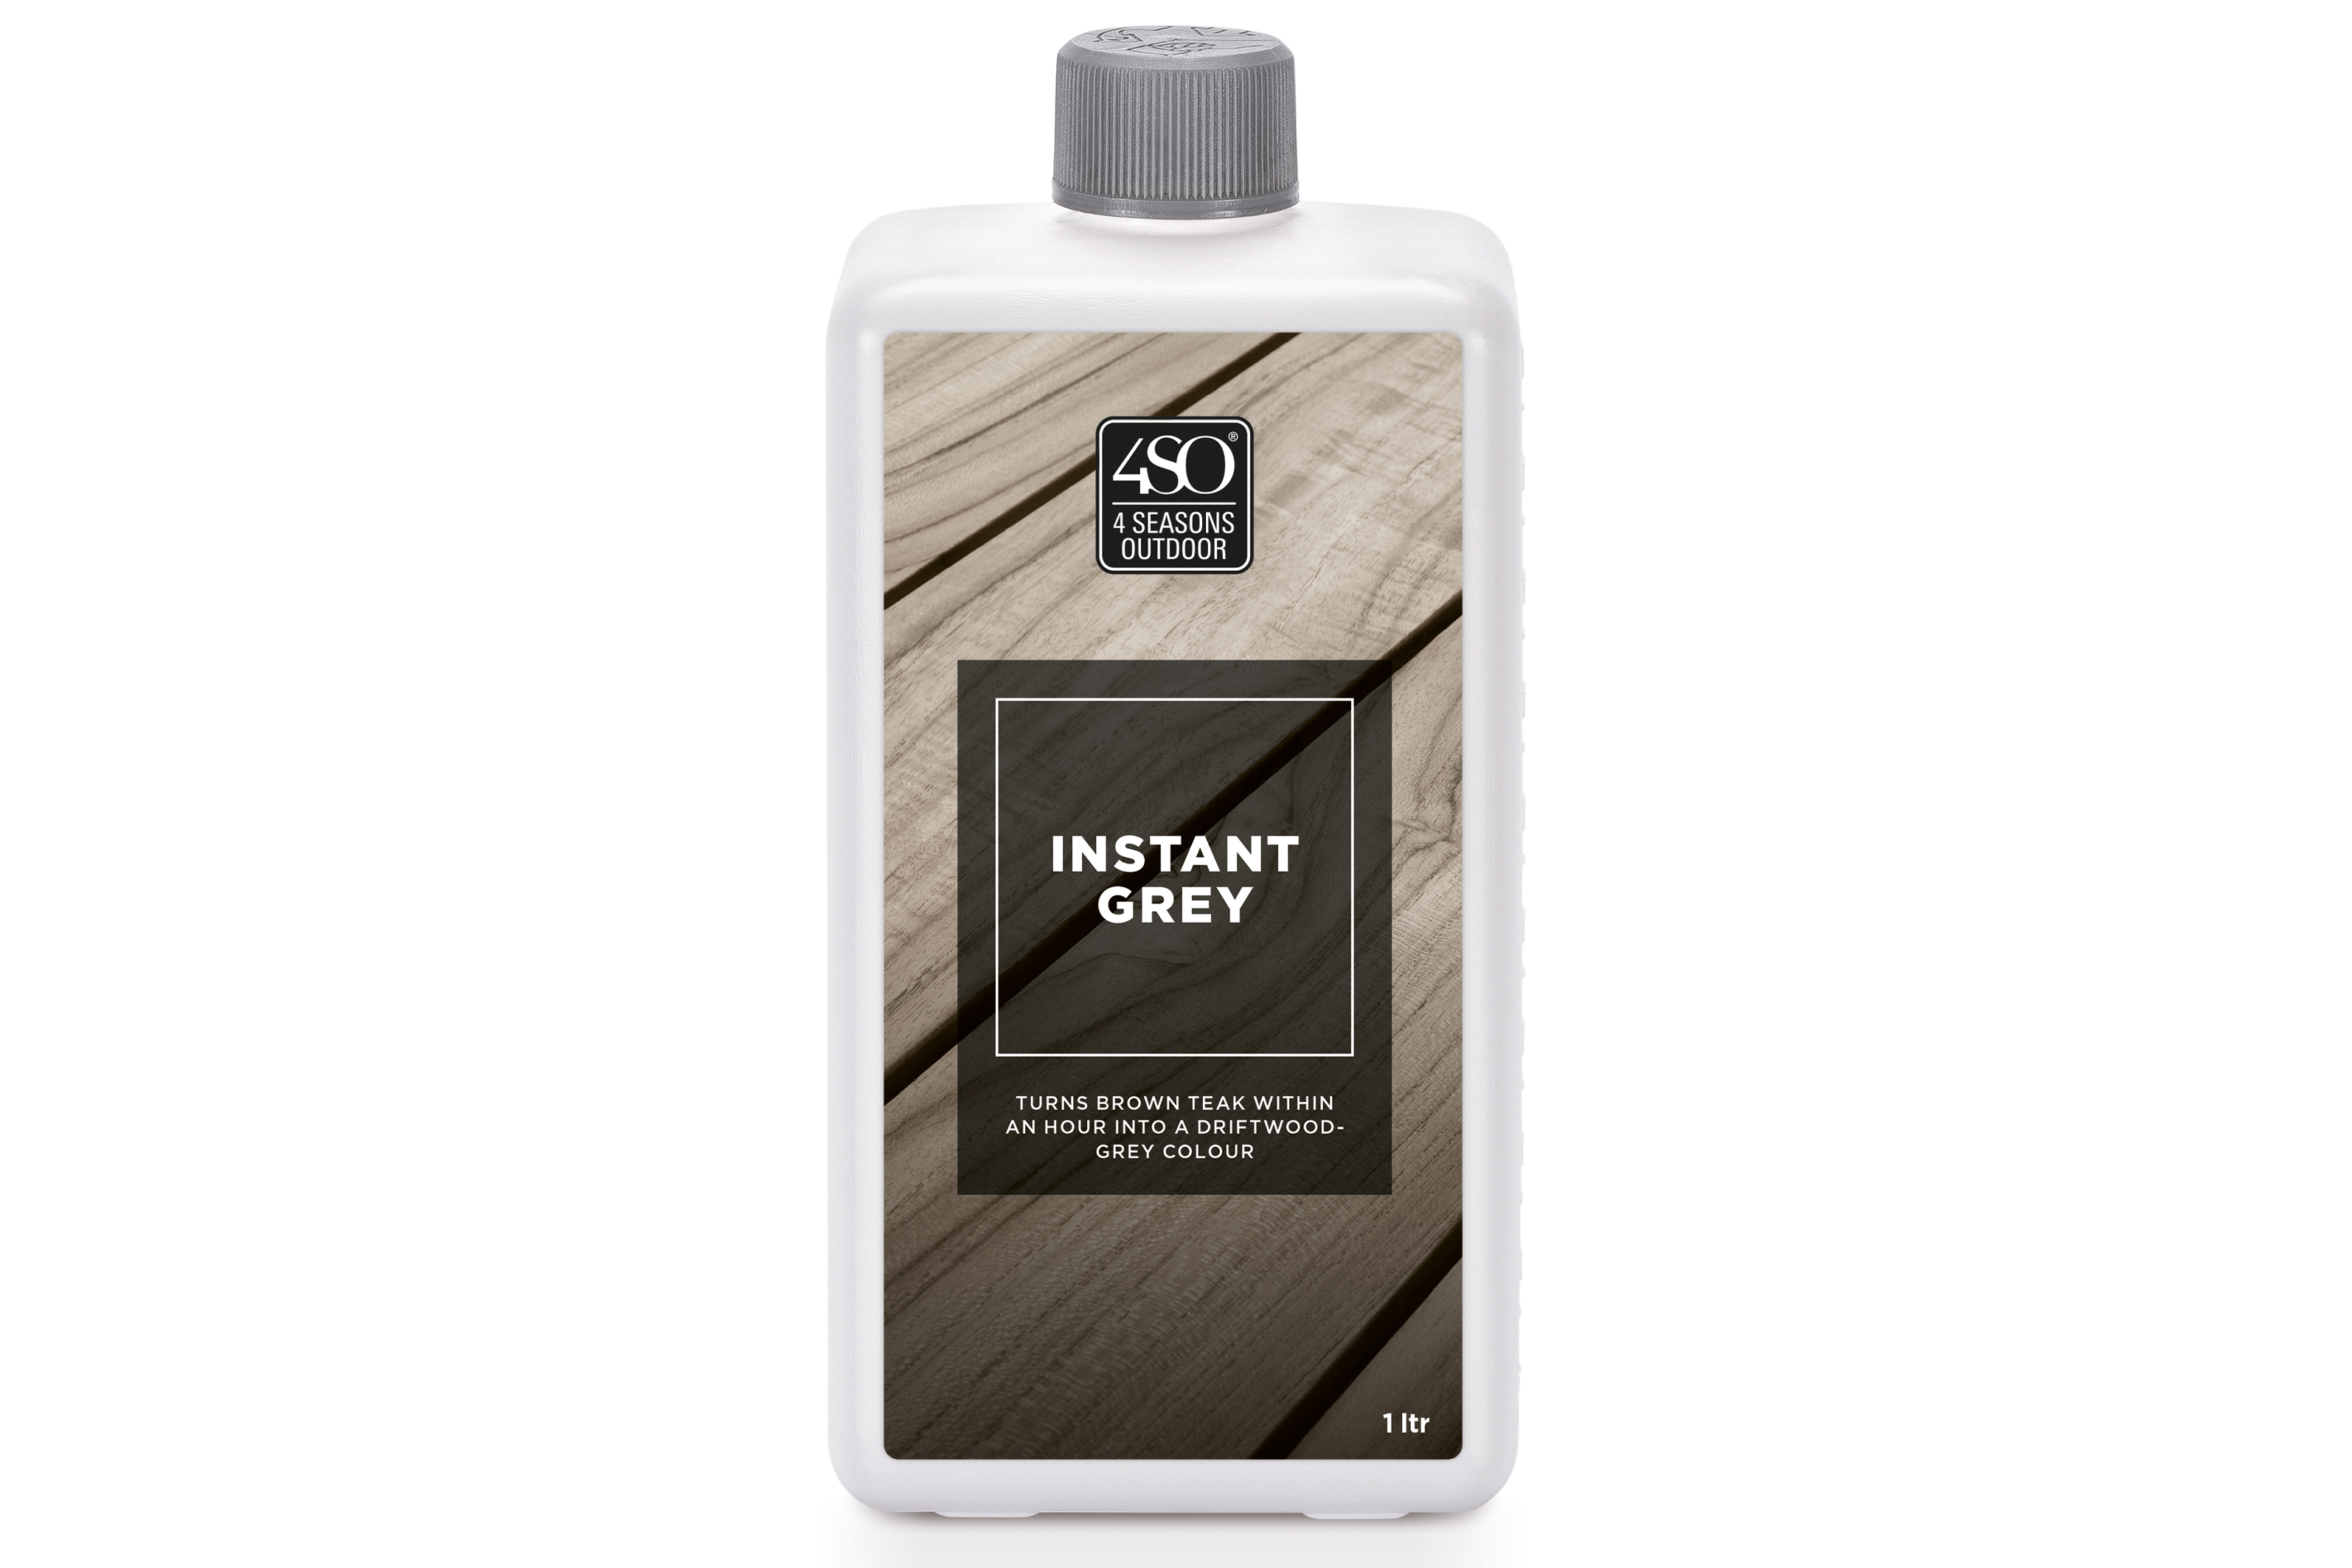 4SO instant grey